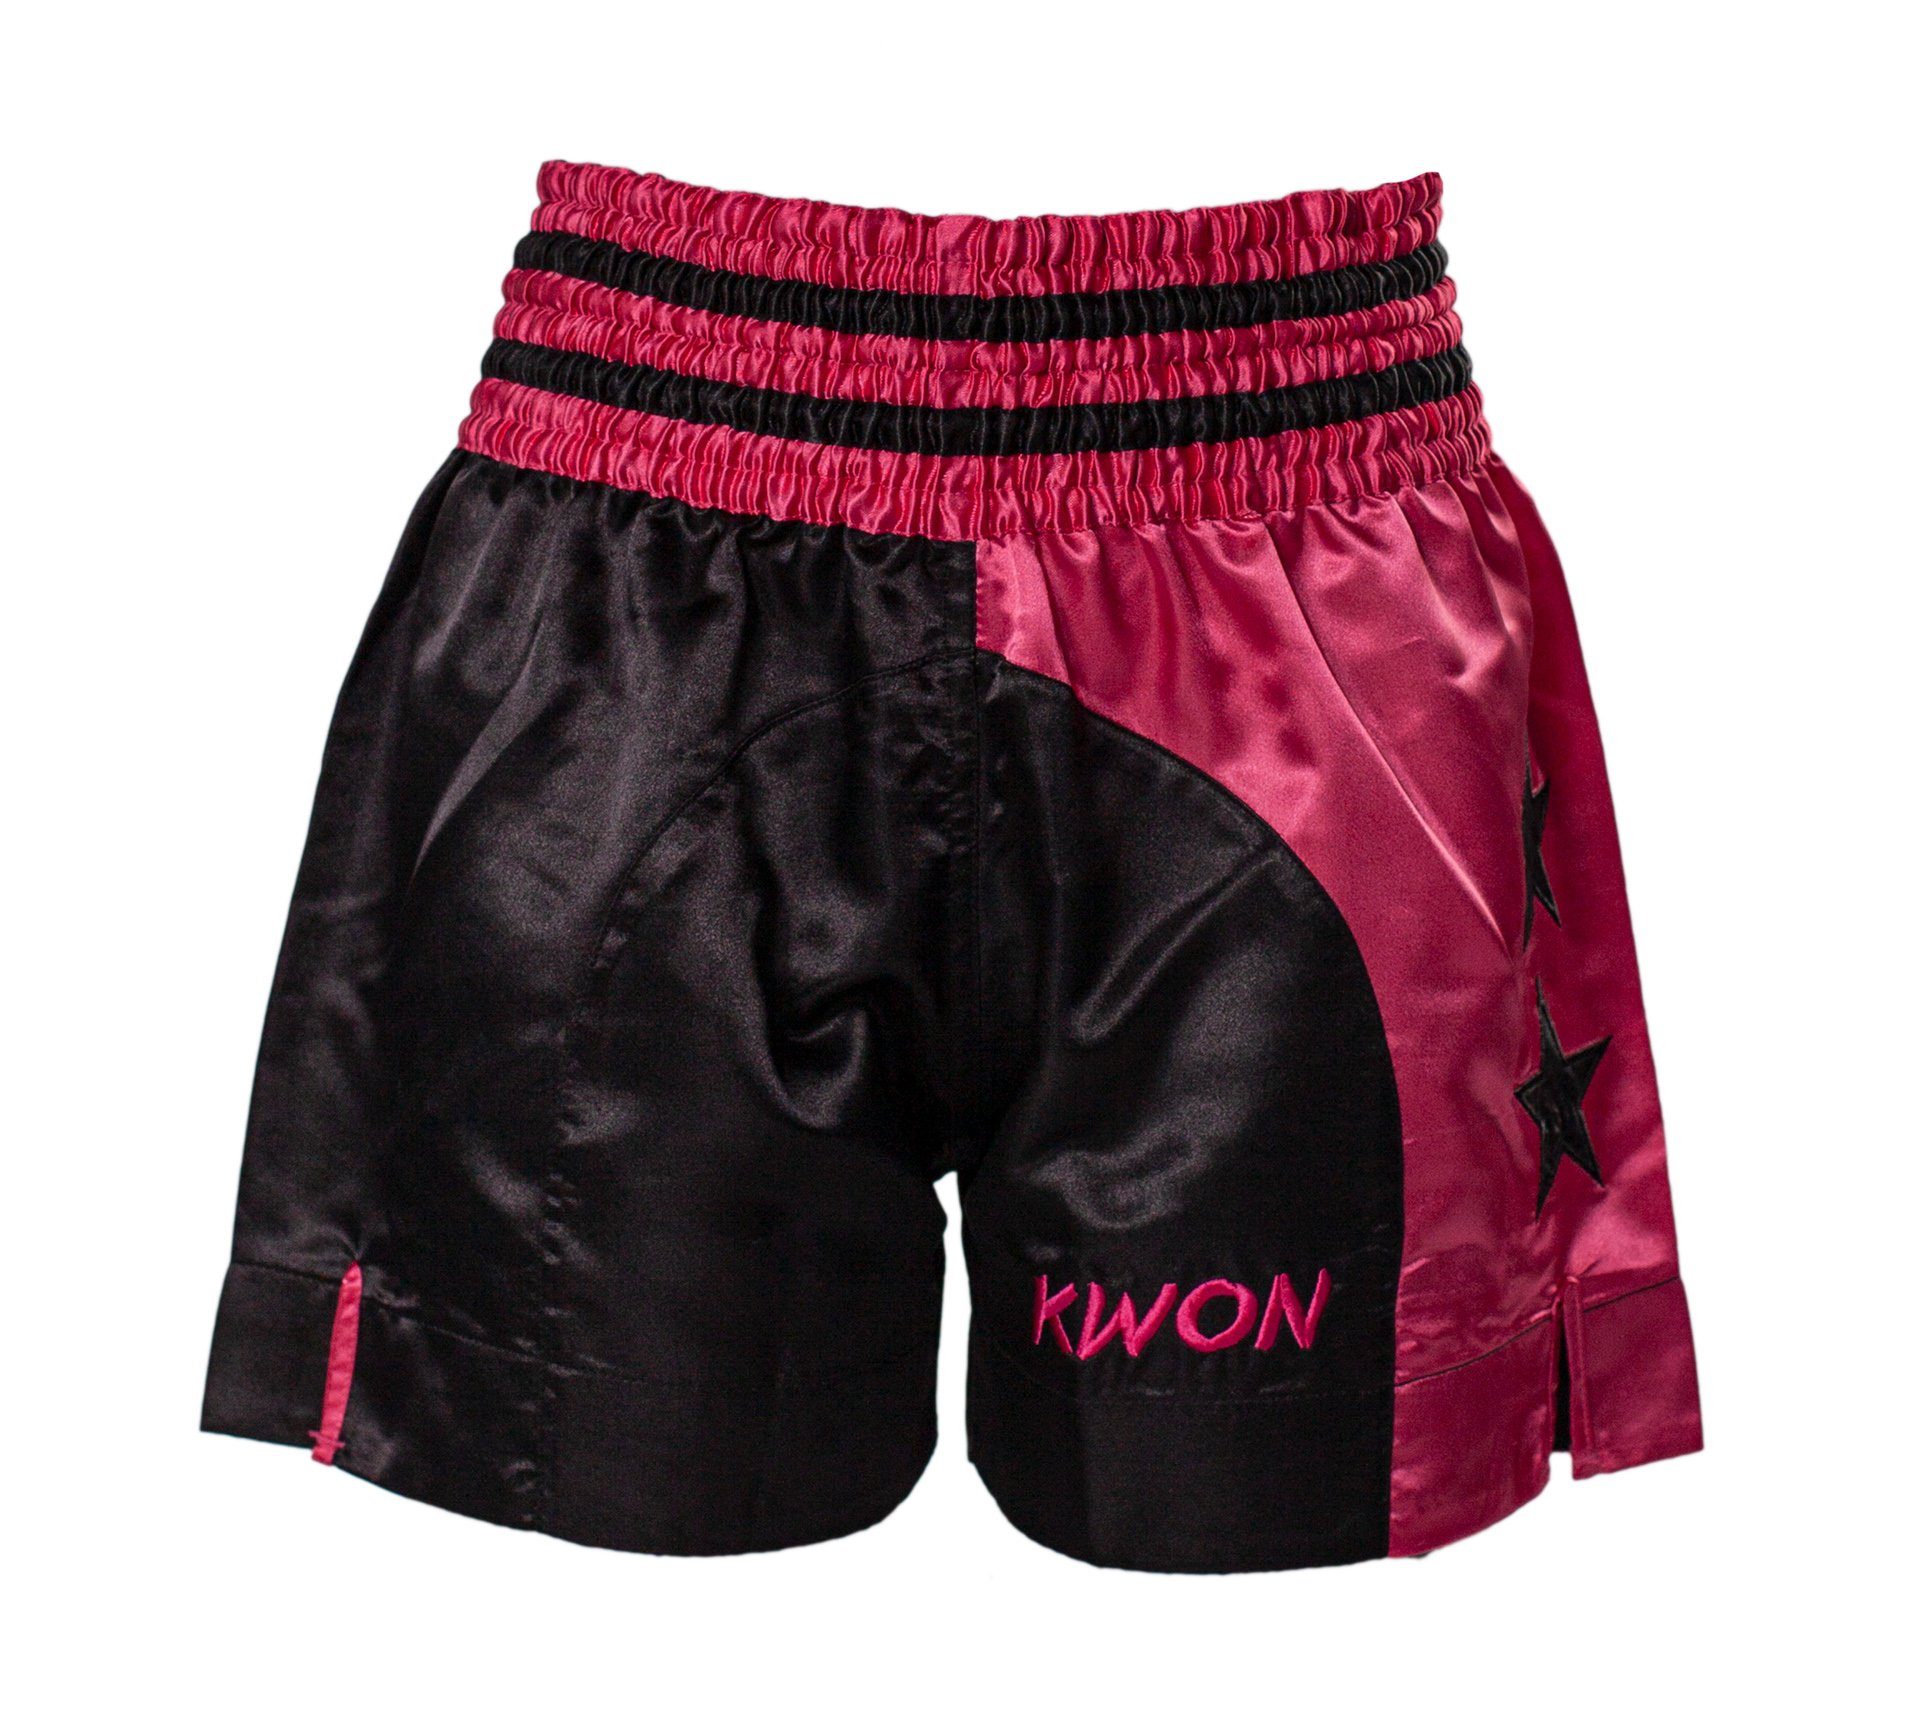 KWON Sporthose Thaiboxhose Damen Girl Schnitt, Thai Edler kurz pink Farben traditioneller Sterne, Shorts (Stück) magenta kräftige Muay Look, Kickboxen